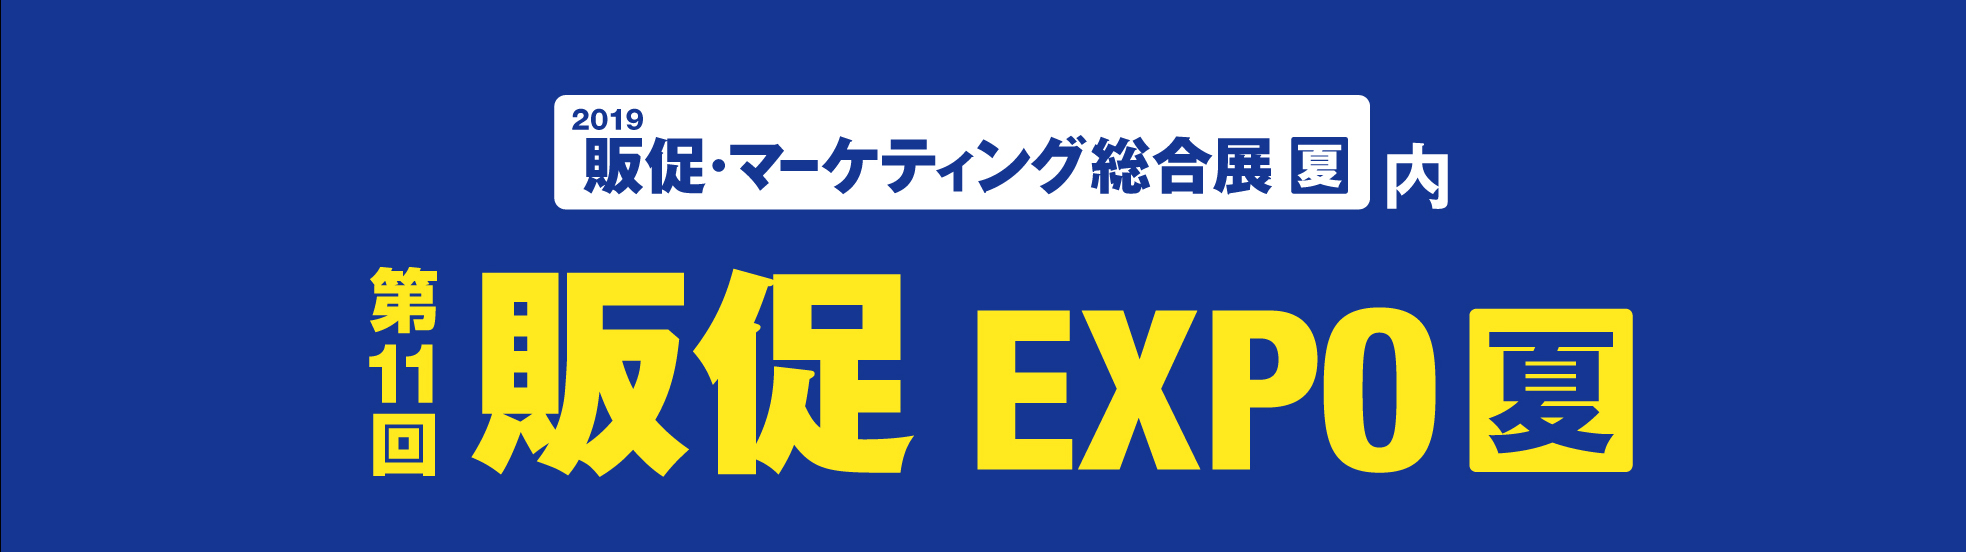 第11回販促EXPO【夏】東京ビッグサイトにて開催中です。